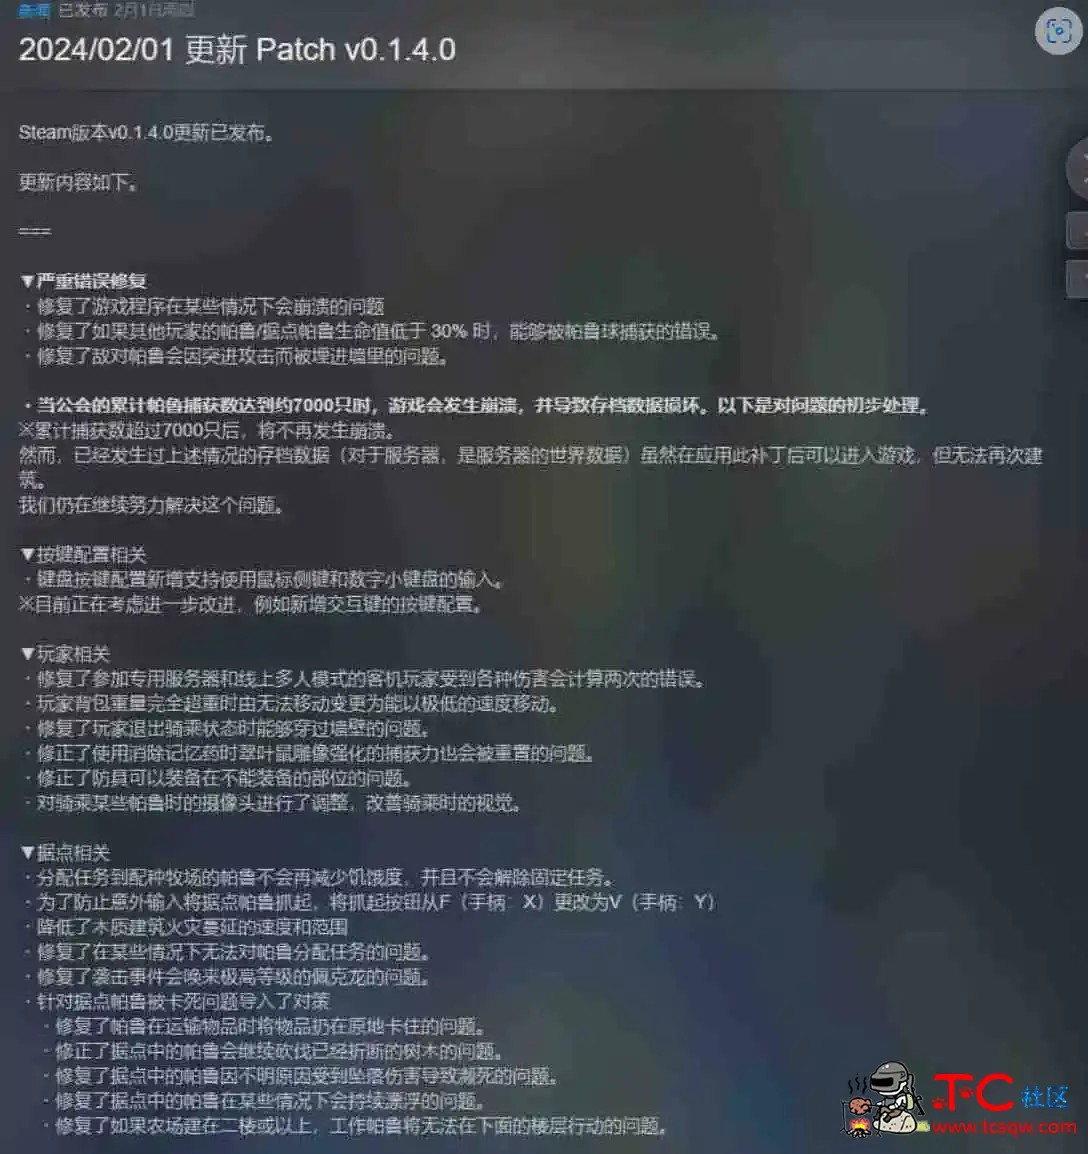 幻兽帕鲁v0.1.4.0 中文+升级补丁+单机+联机+免安装+解压即玩 屠城辅助网www.tcfz1.com4750